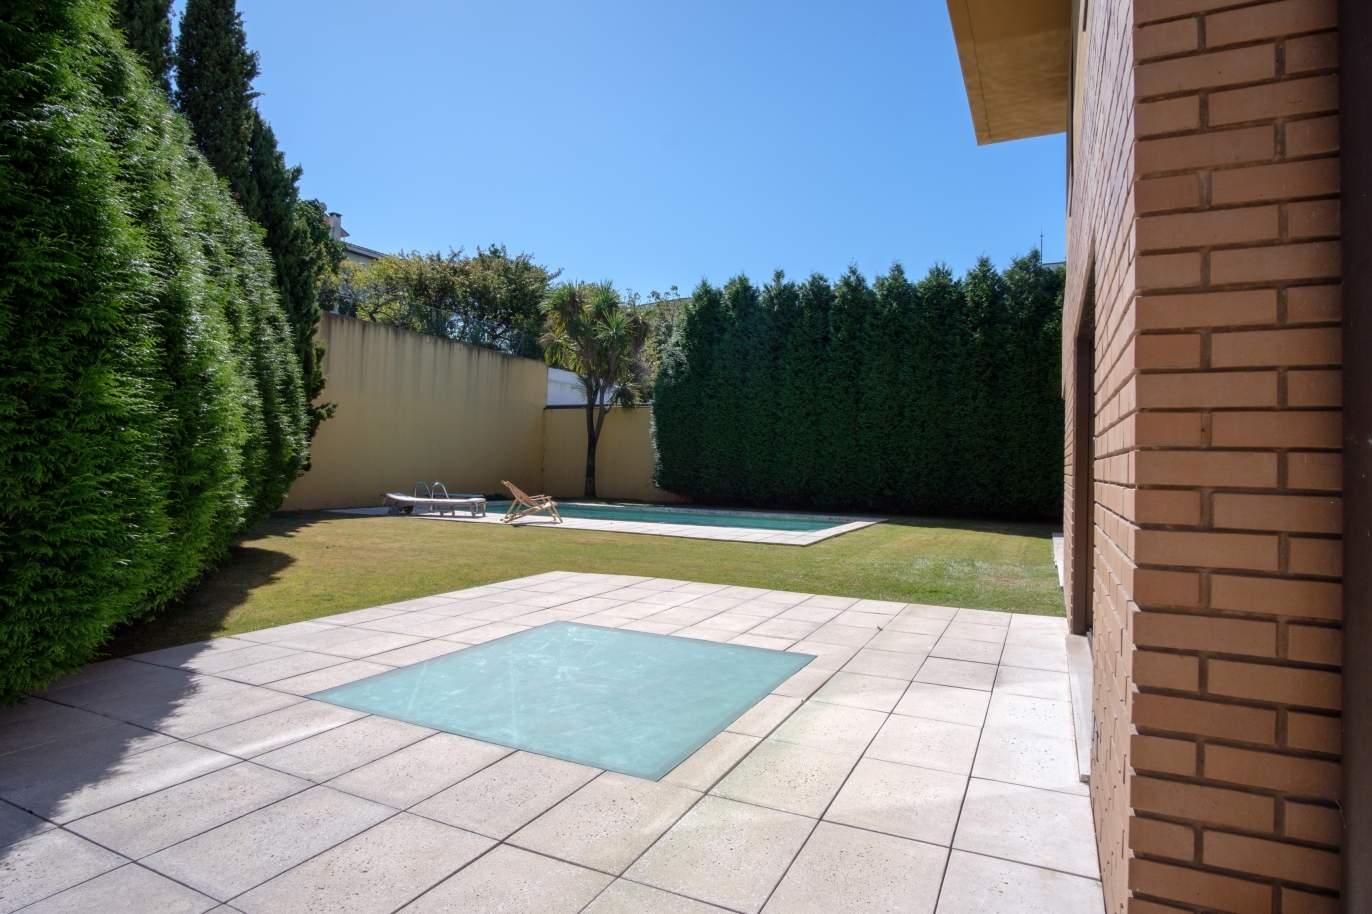 Venta de villa de 4 frentes con piscina y jardín, S. Mamede Infesta_118955